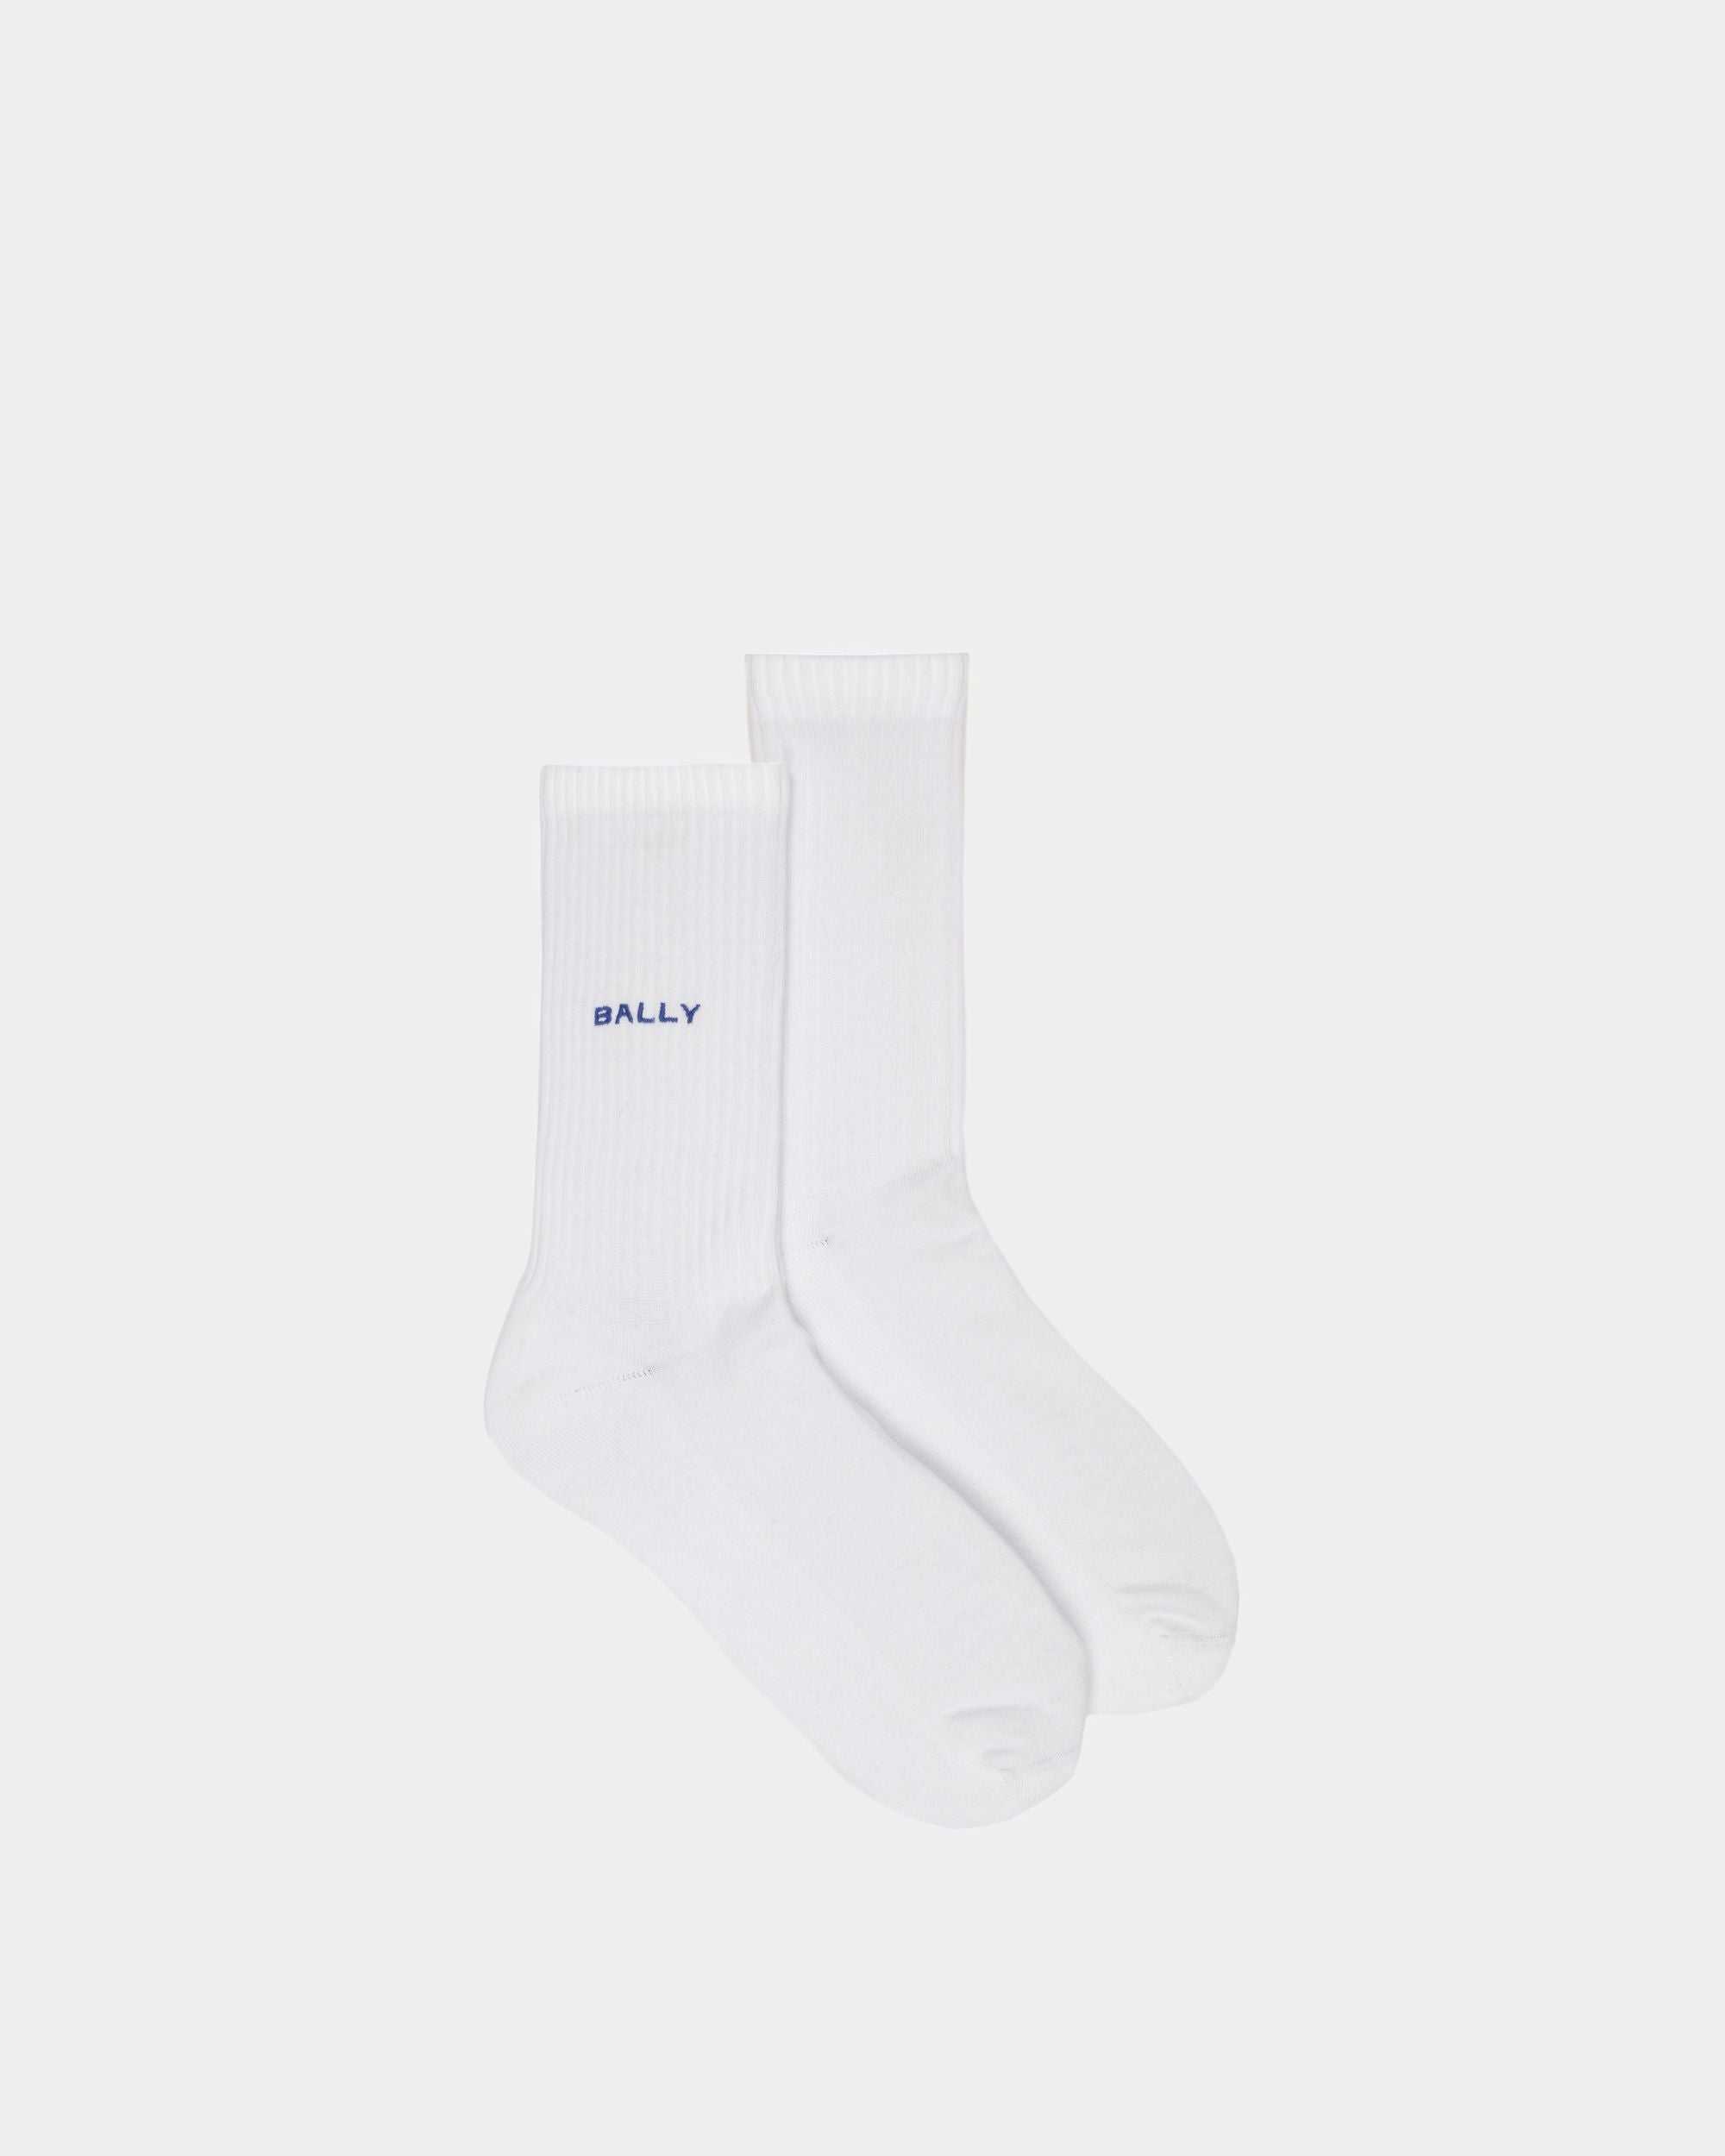 Men's Socks in White Cotton | Bally | Still Life Top